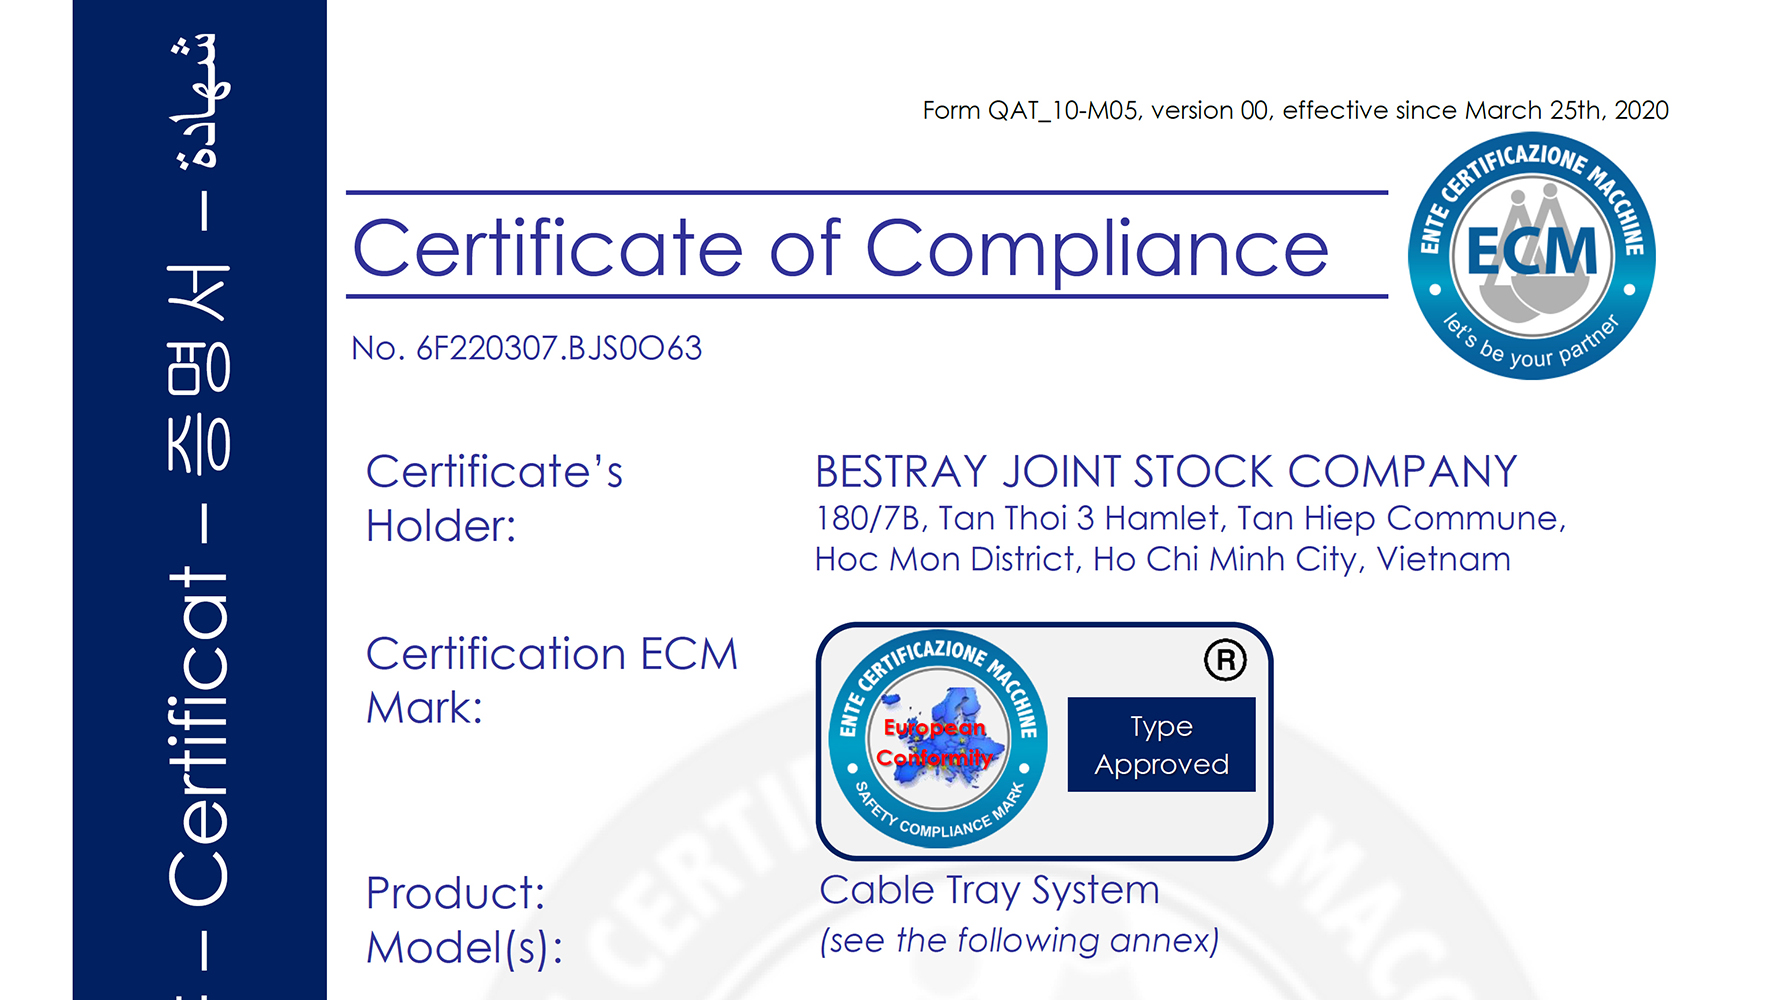 Chỉ thị chung về an toàn sản phẩm 2001/95/EC (GPSD)